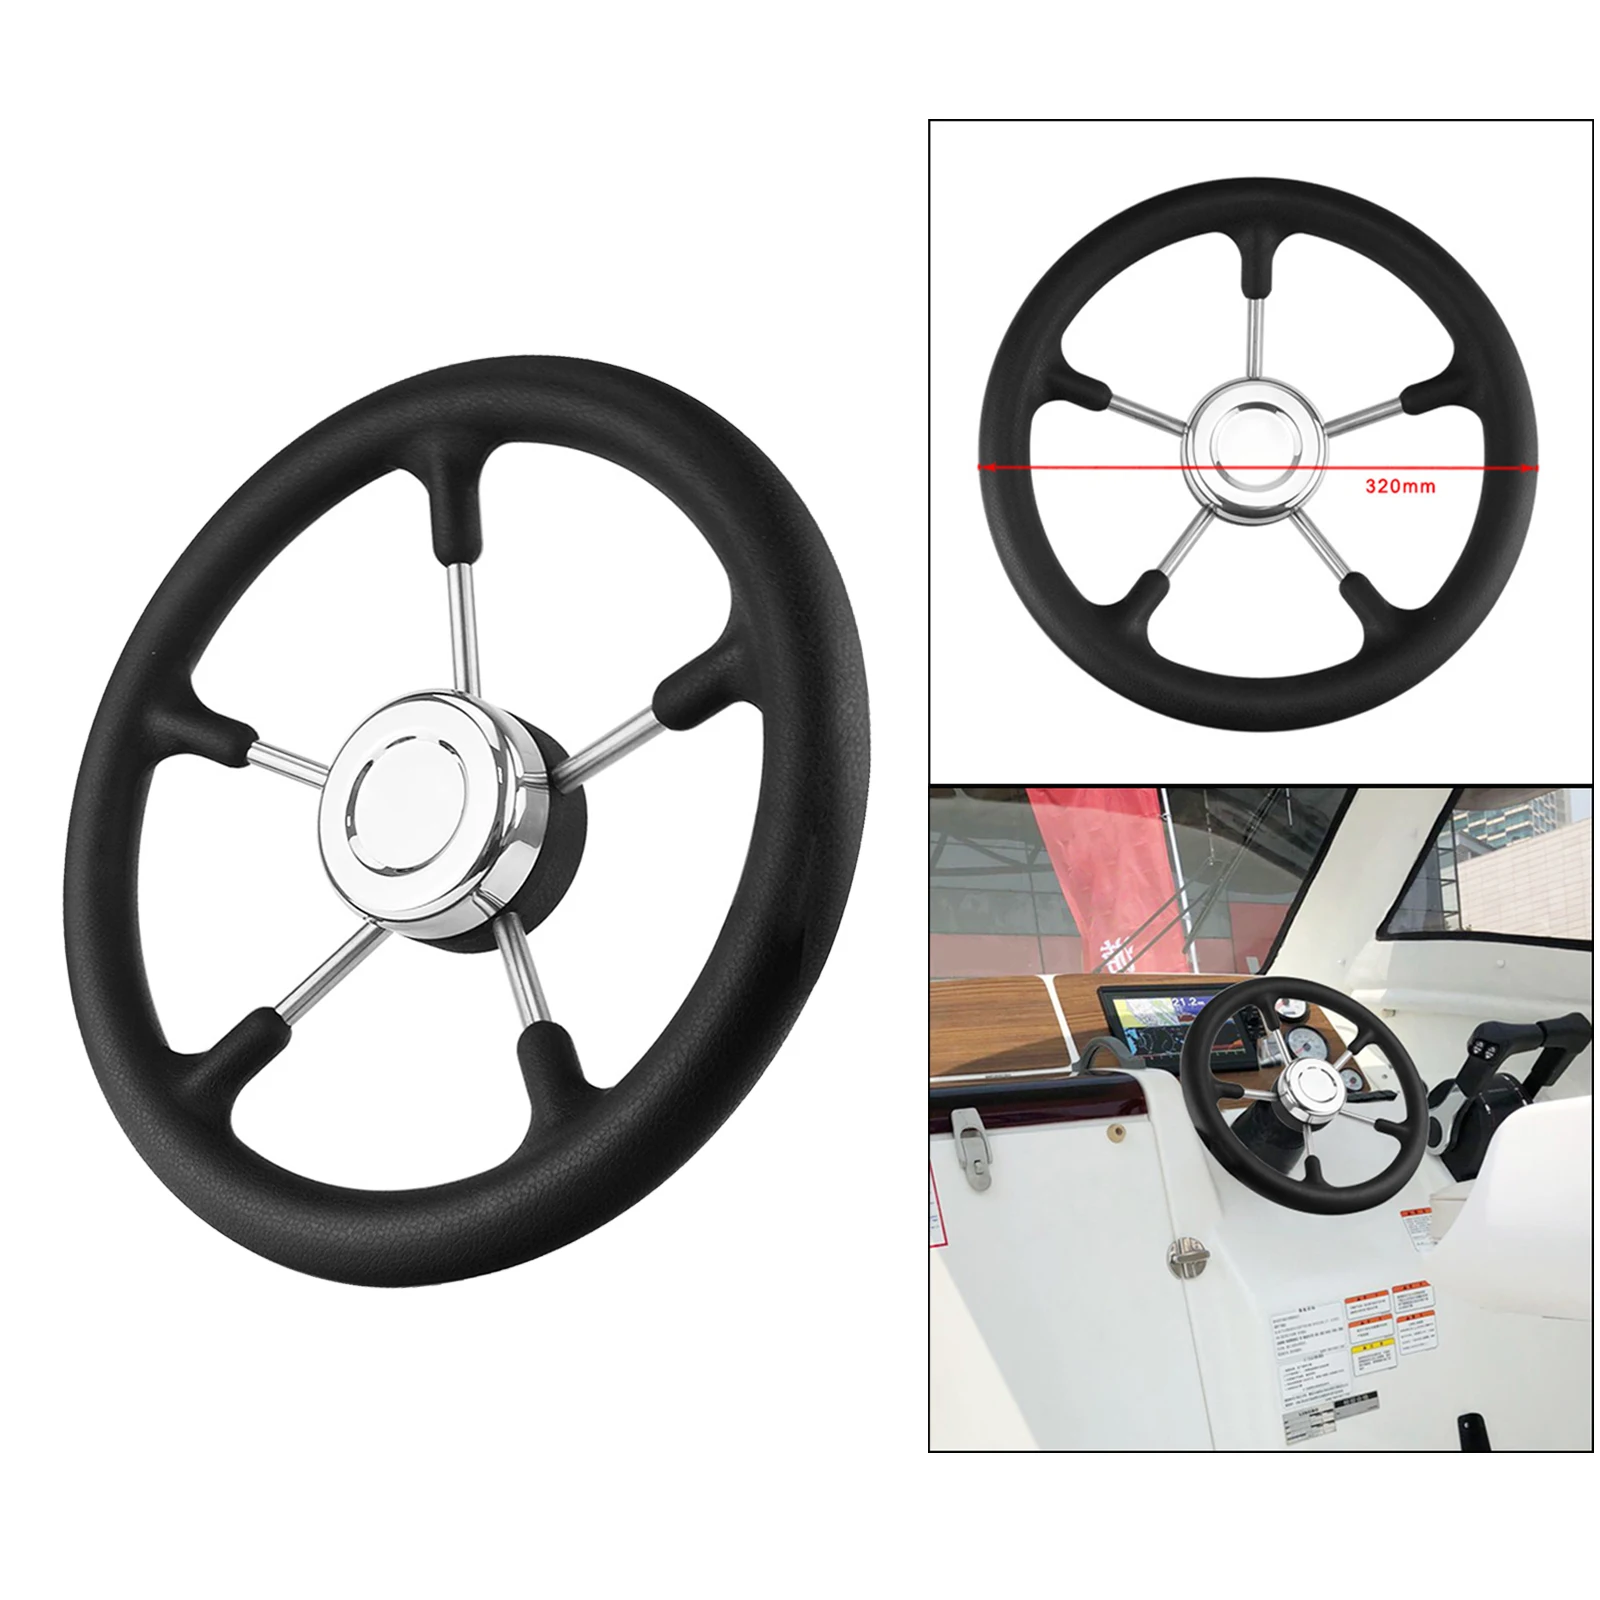 320mm 12.6 inch Boat Steering Wheel 3/4